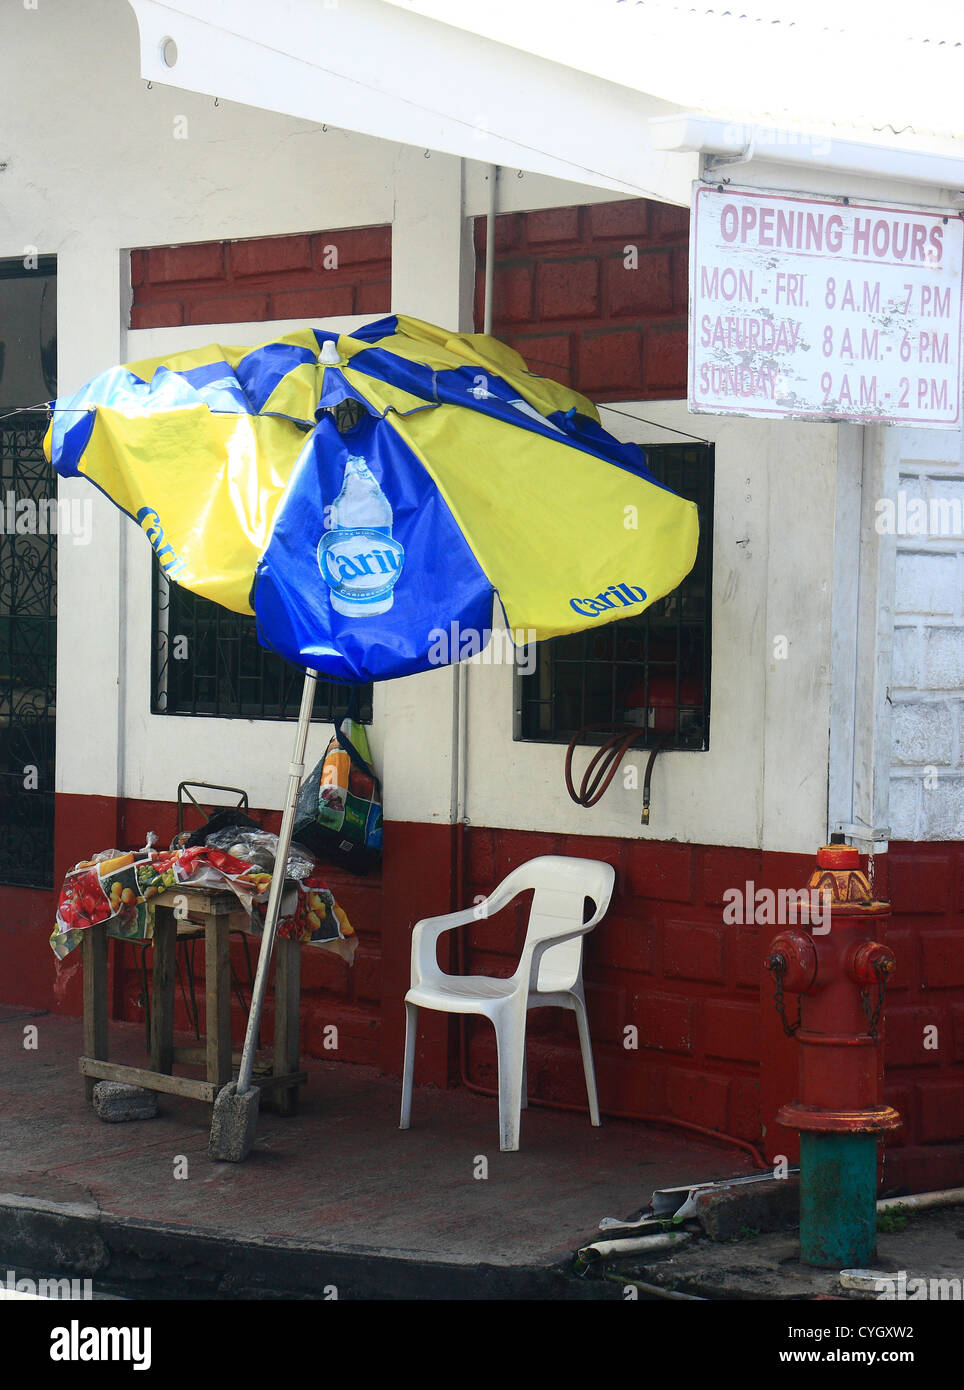 Un parasol jaune et bleu s'appuyant sur un vieux bâtiment blanc et rouge Banque D'Images